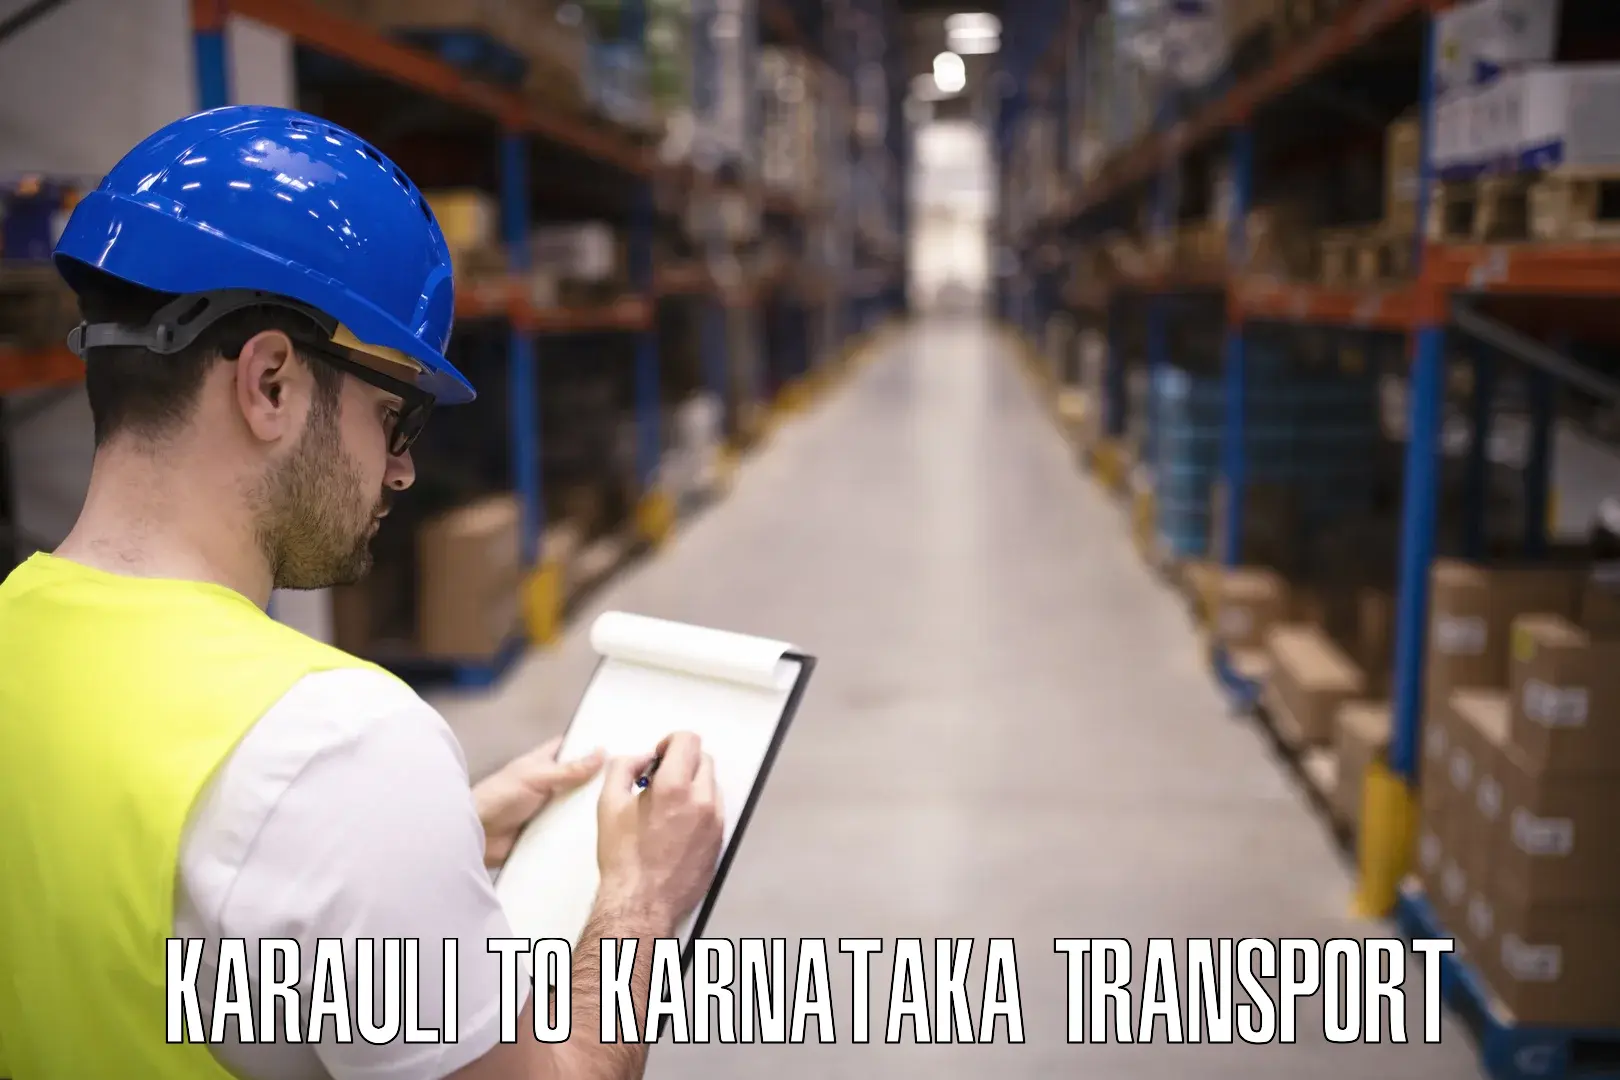 Bike transport service Karauli to Karnataka